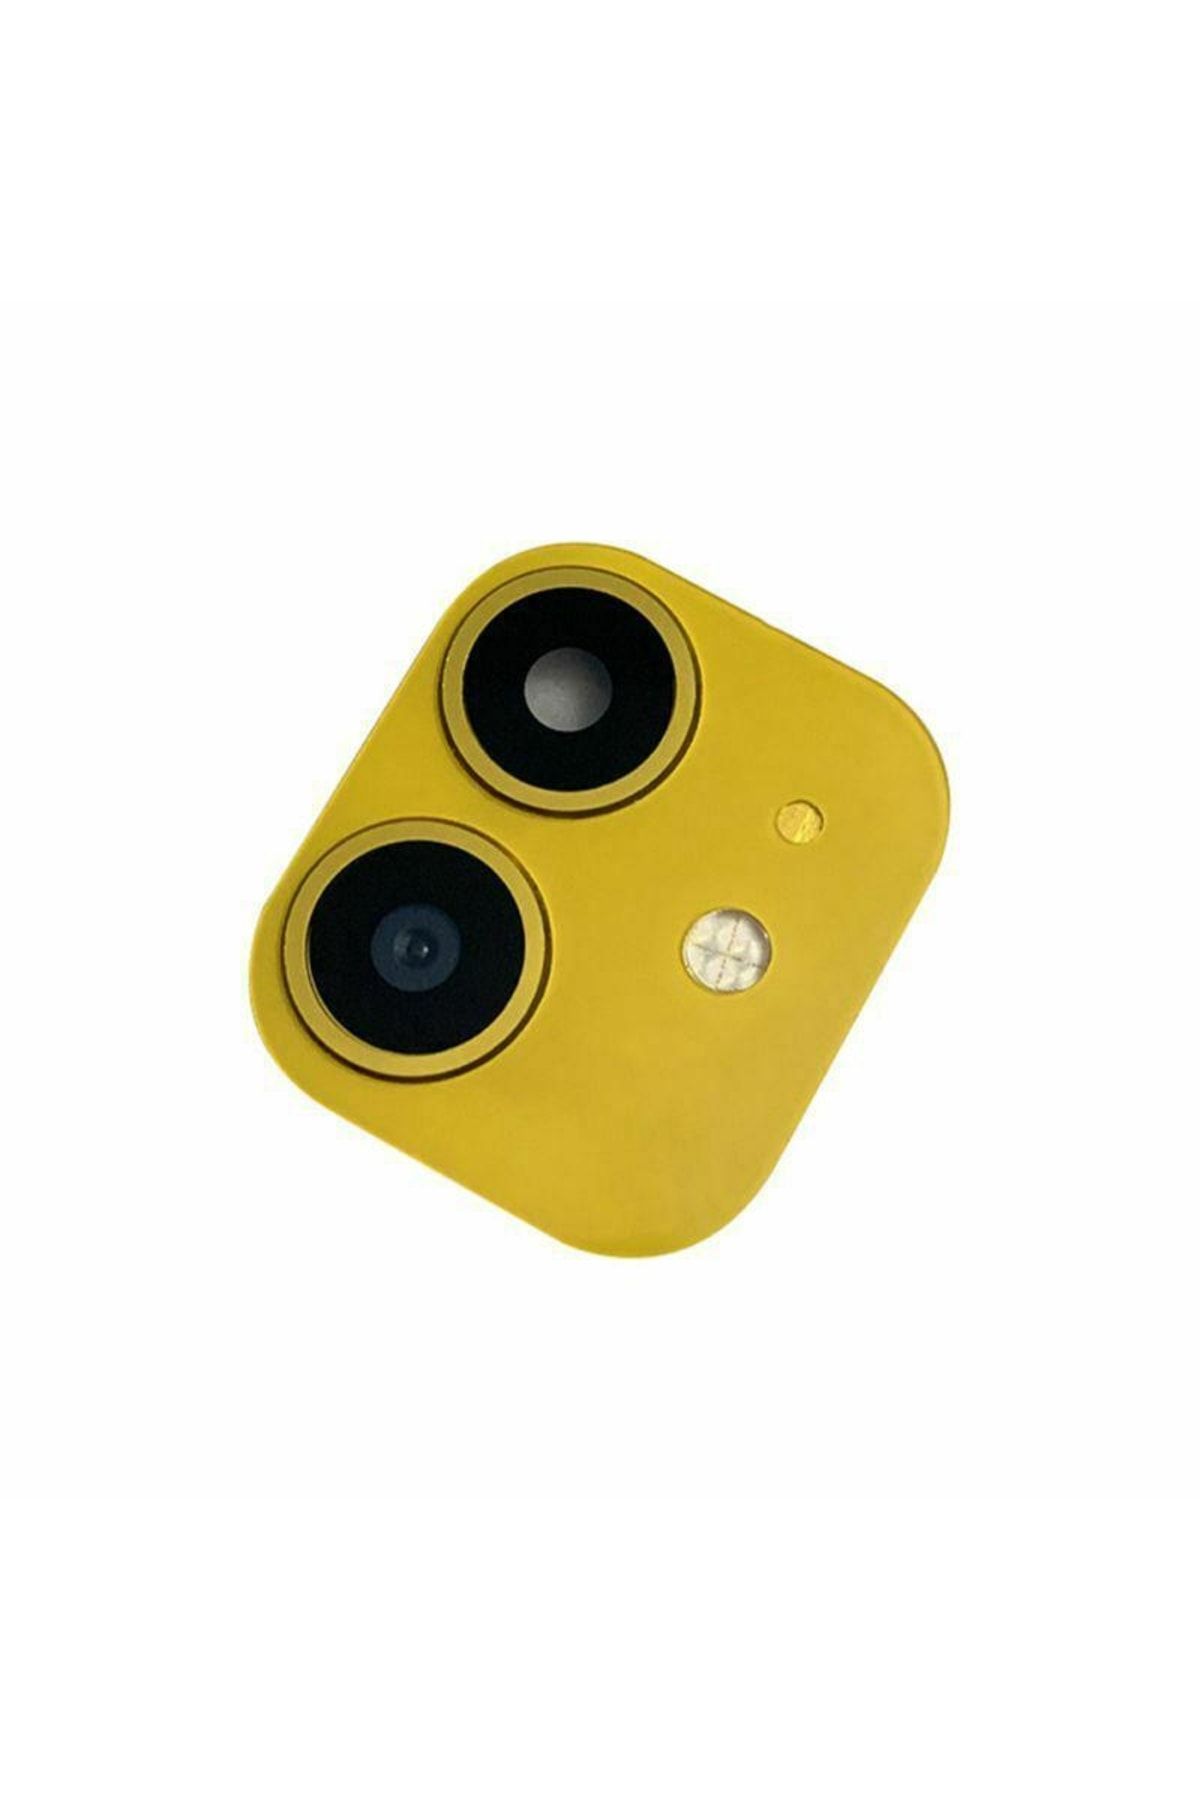 TEKNOPAZARIM Iphone Xr 6.1 Cp-03 Iphone 11 Uyumlu Kamera Lens Dönüştürücü-sarı Renk